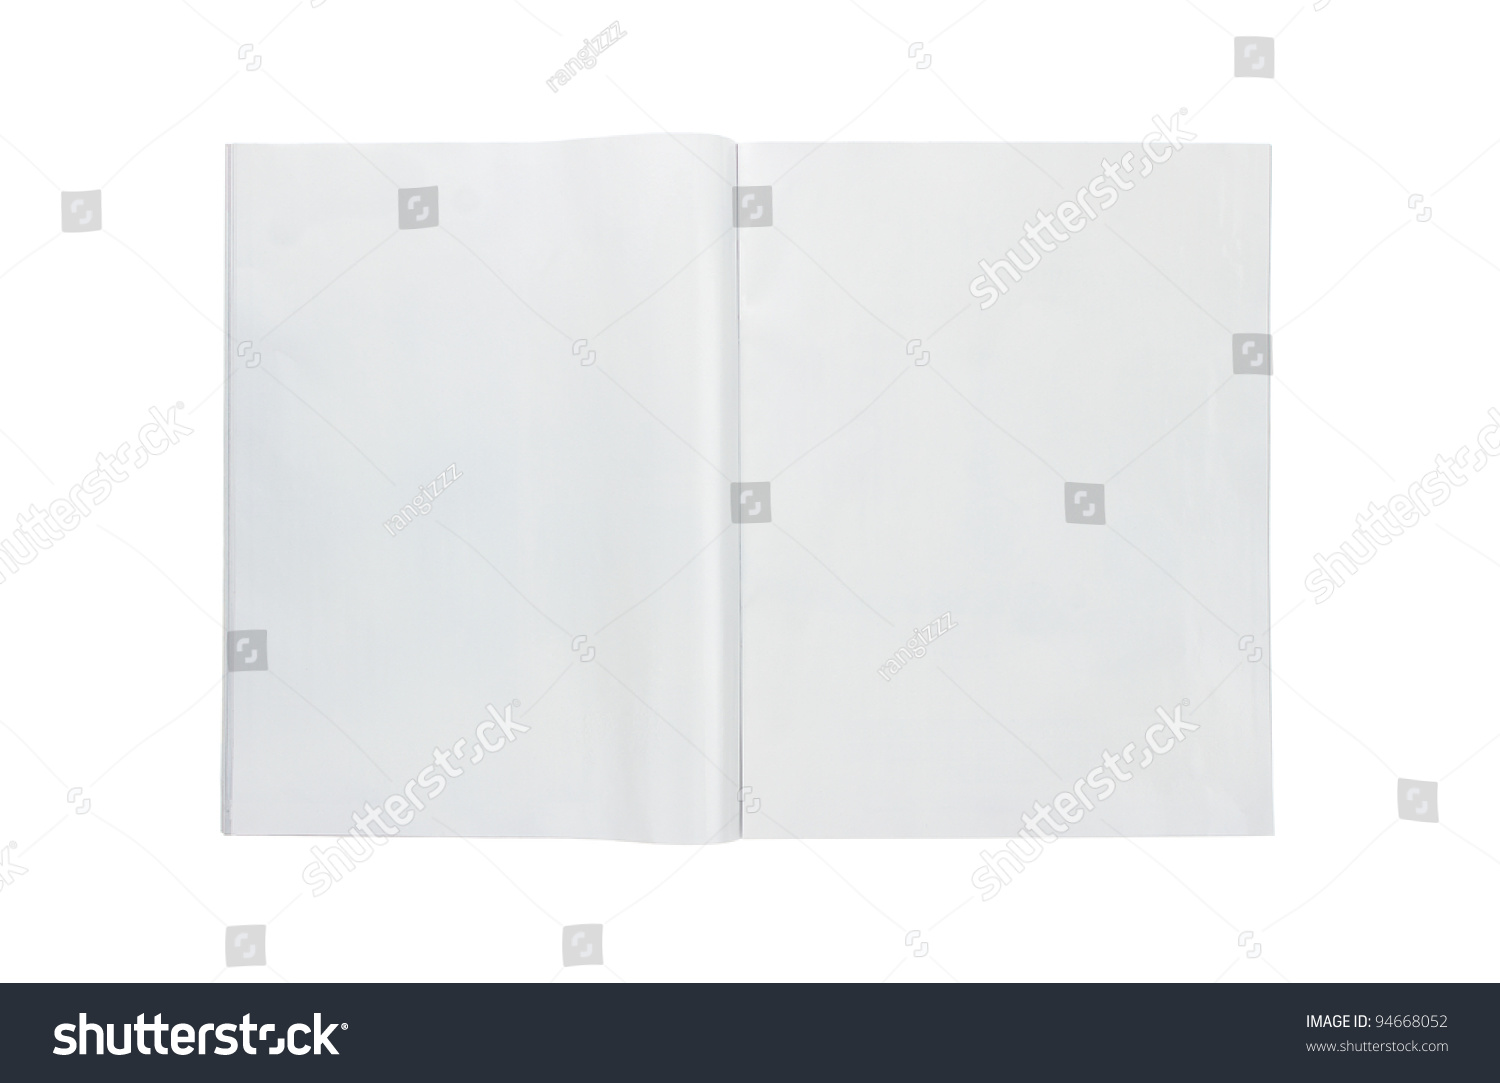 Blank open magazine isolated on white background #94668052